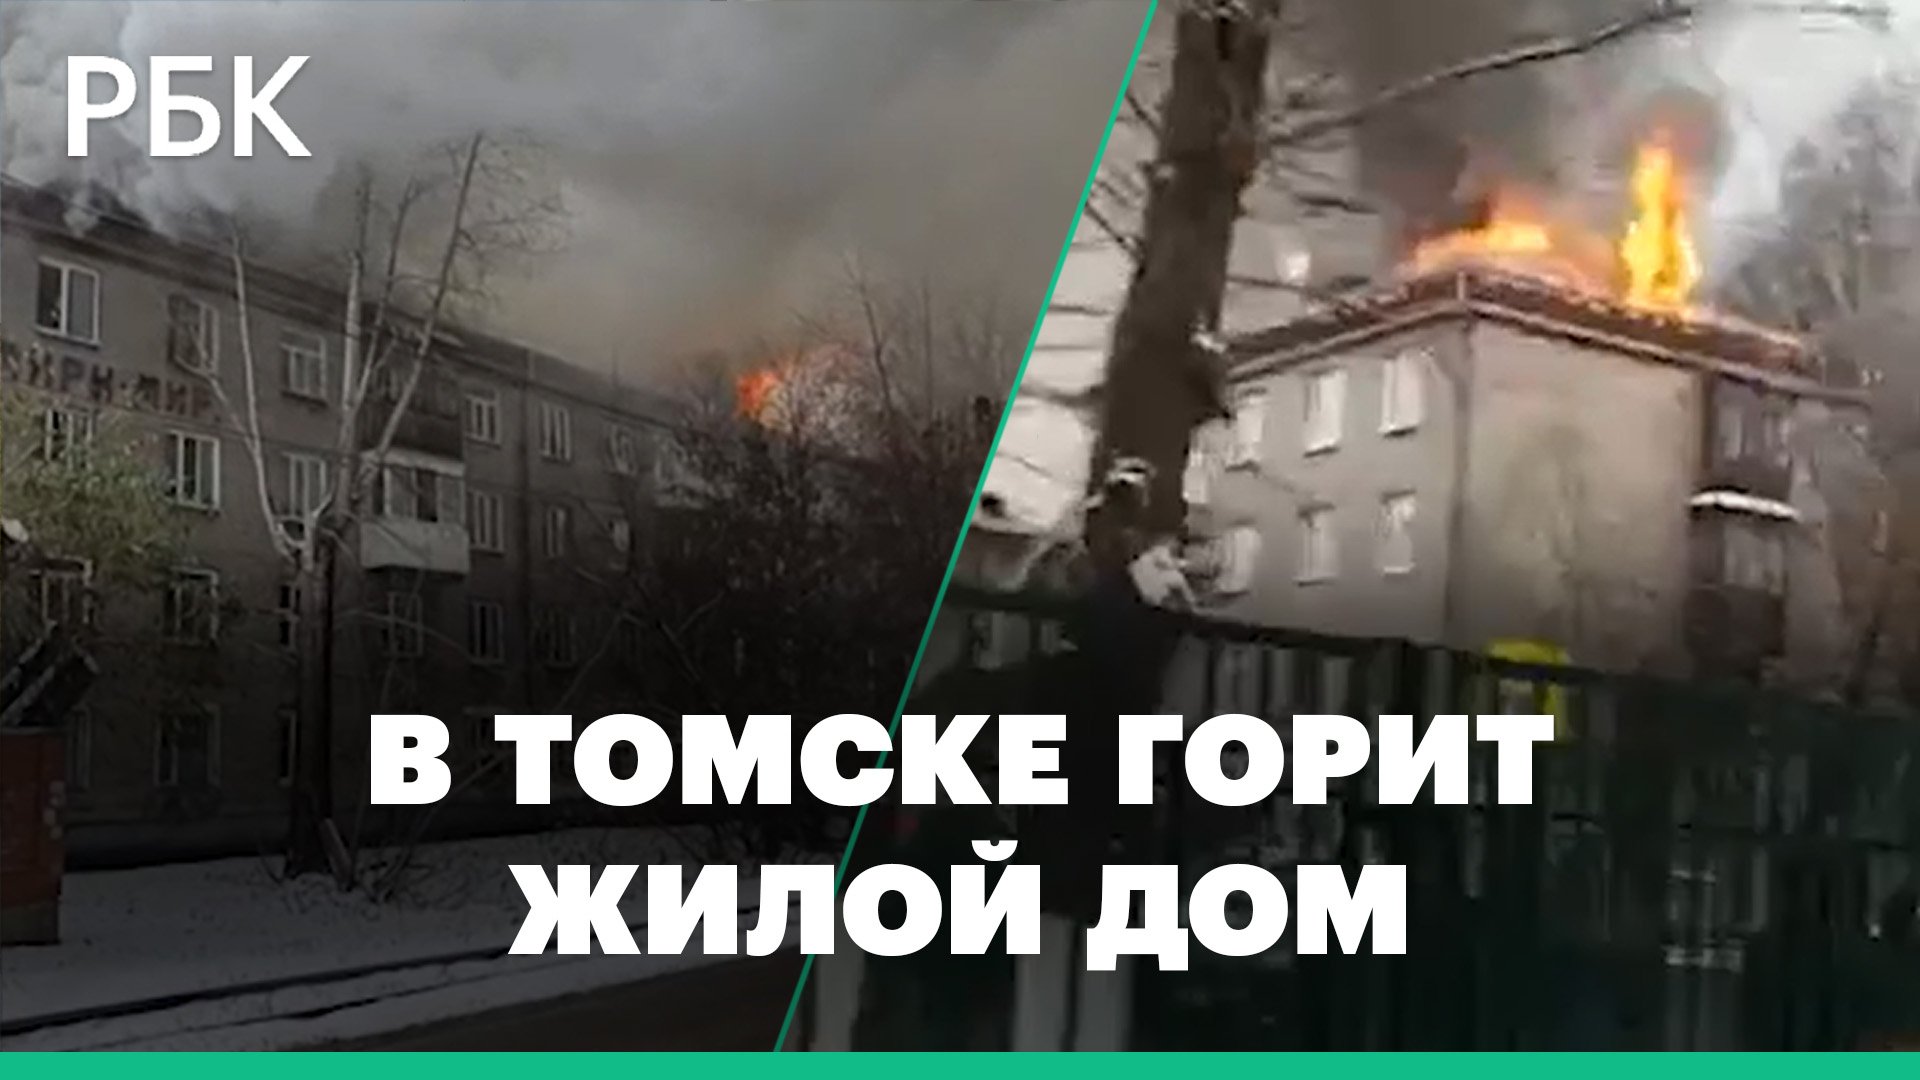 Первые кадры с места пожара в жилом доме в Томске. Жителей эвакуировали